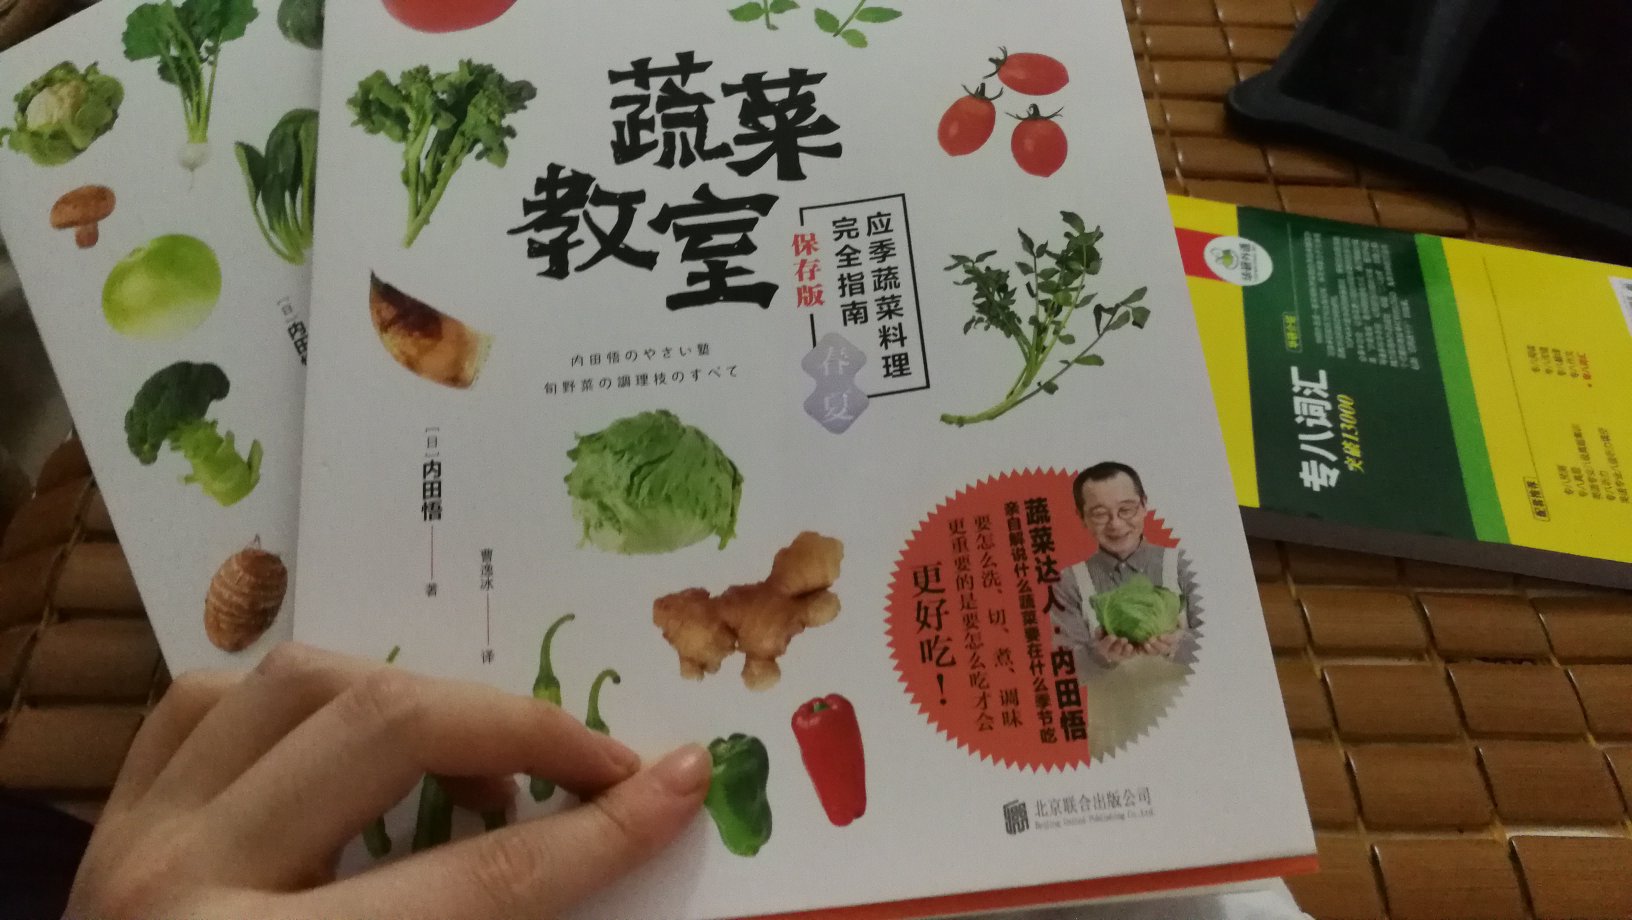 蔬菜上市时间是日本时间 和国内对不上啊 不过包装挺好的